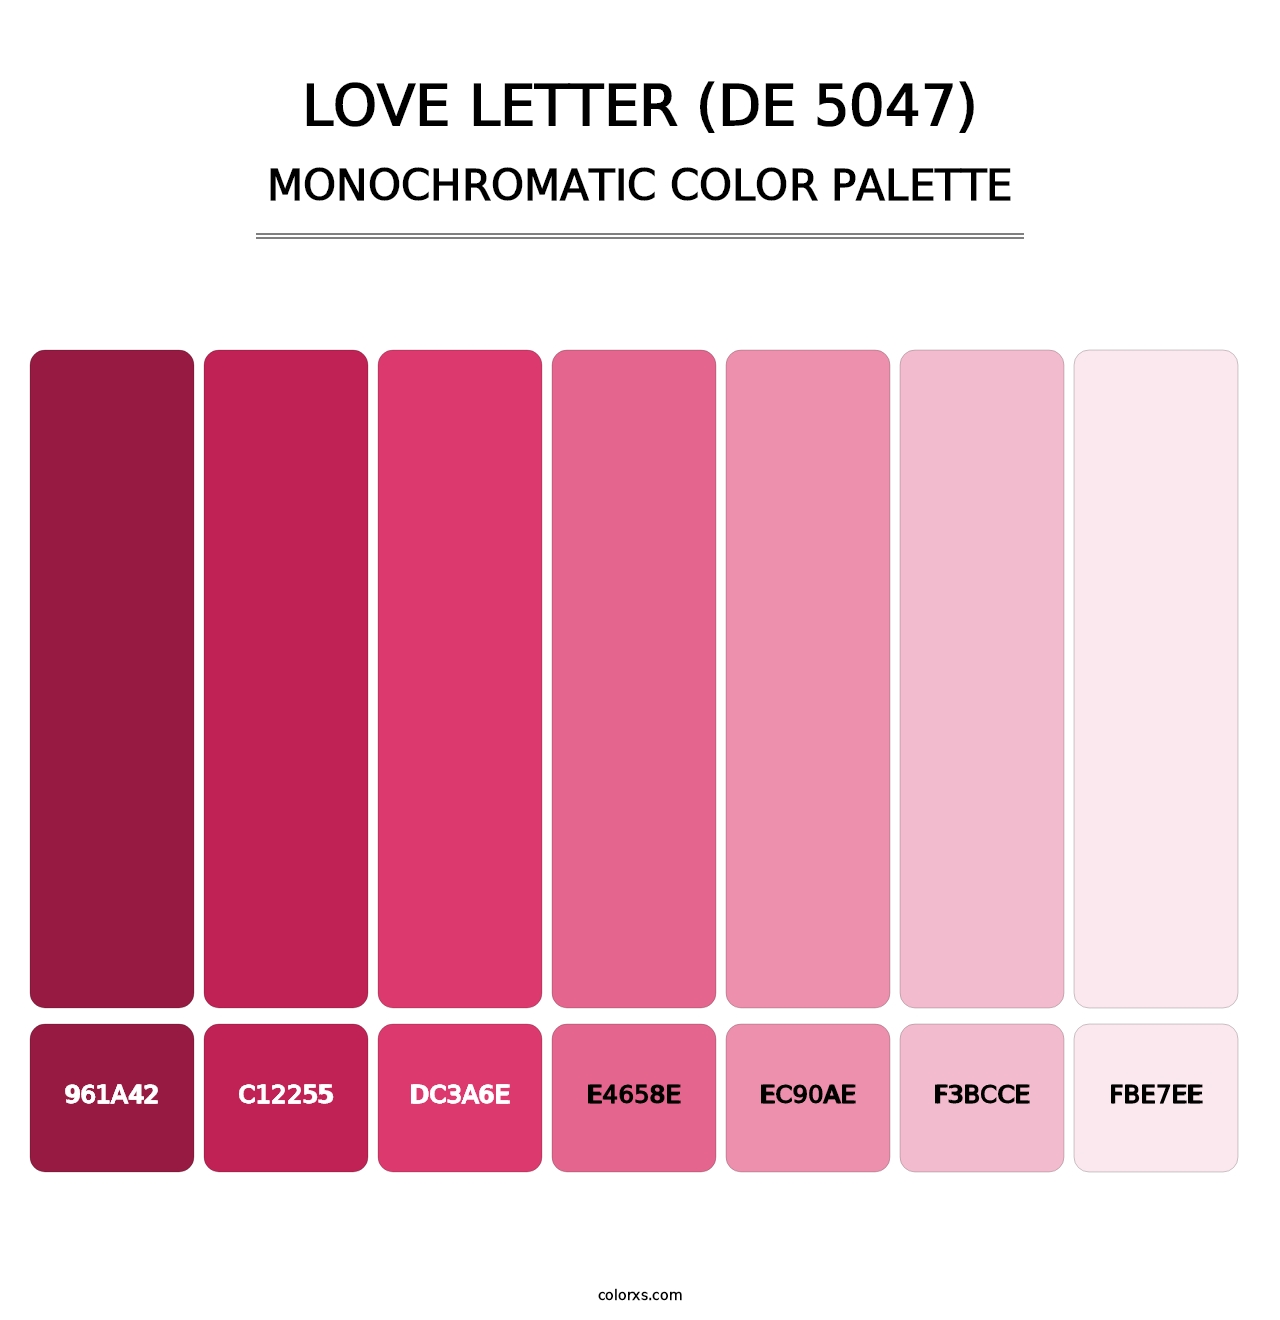 Love Letter (DE 5047) - Monochromatic Color Palette